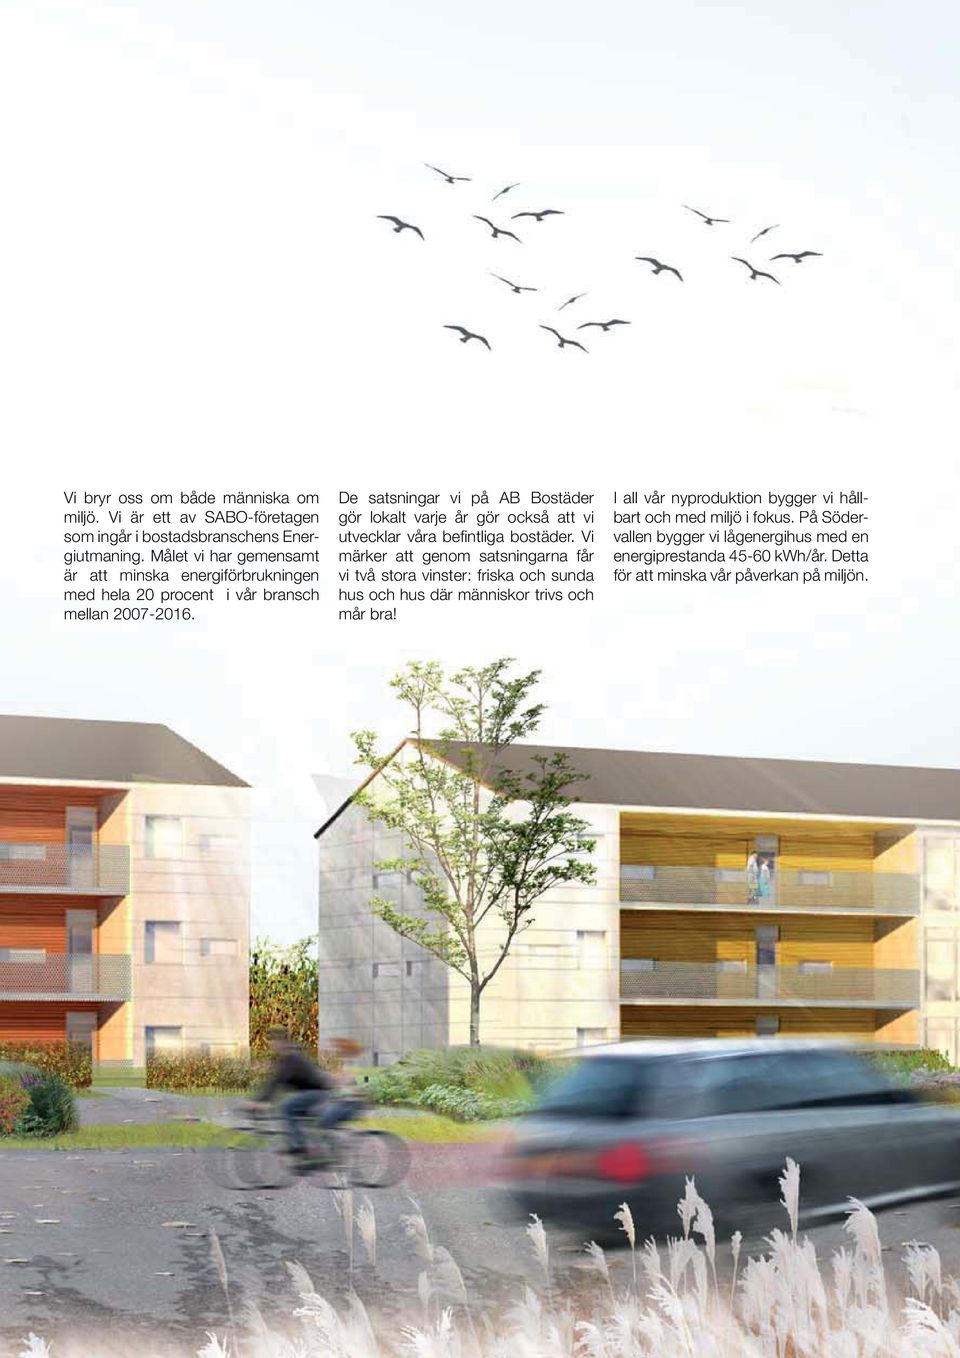 De satsningar vi på AB Bostäder gör lokalt varje år gör också att vi utvecklar våra befintliga bostäder.